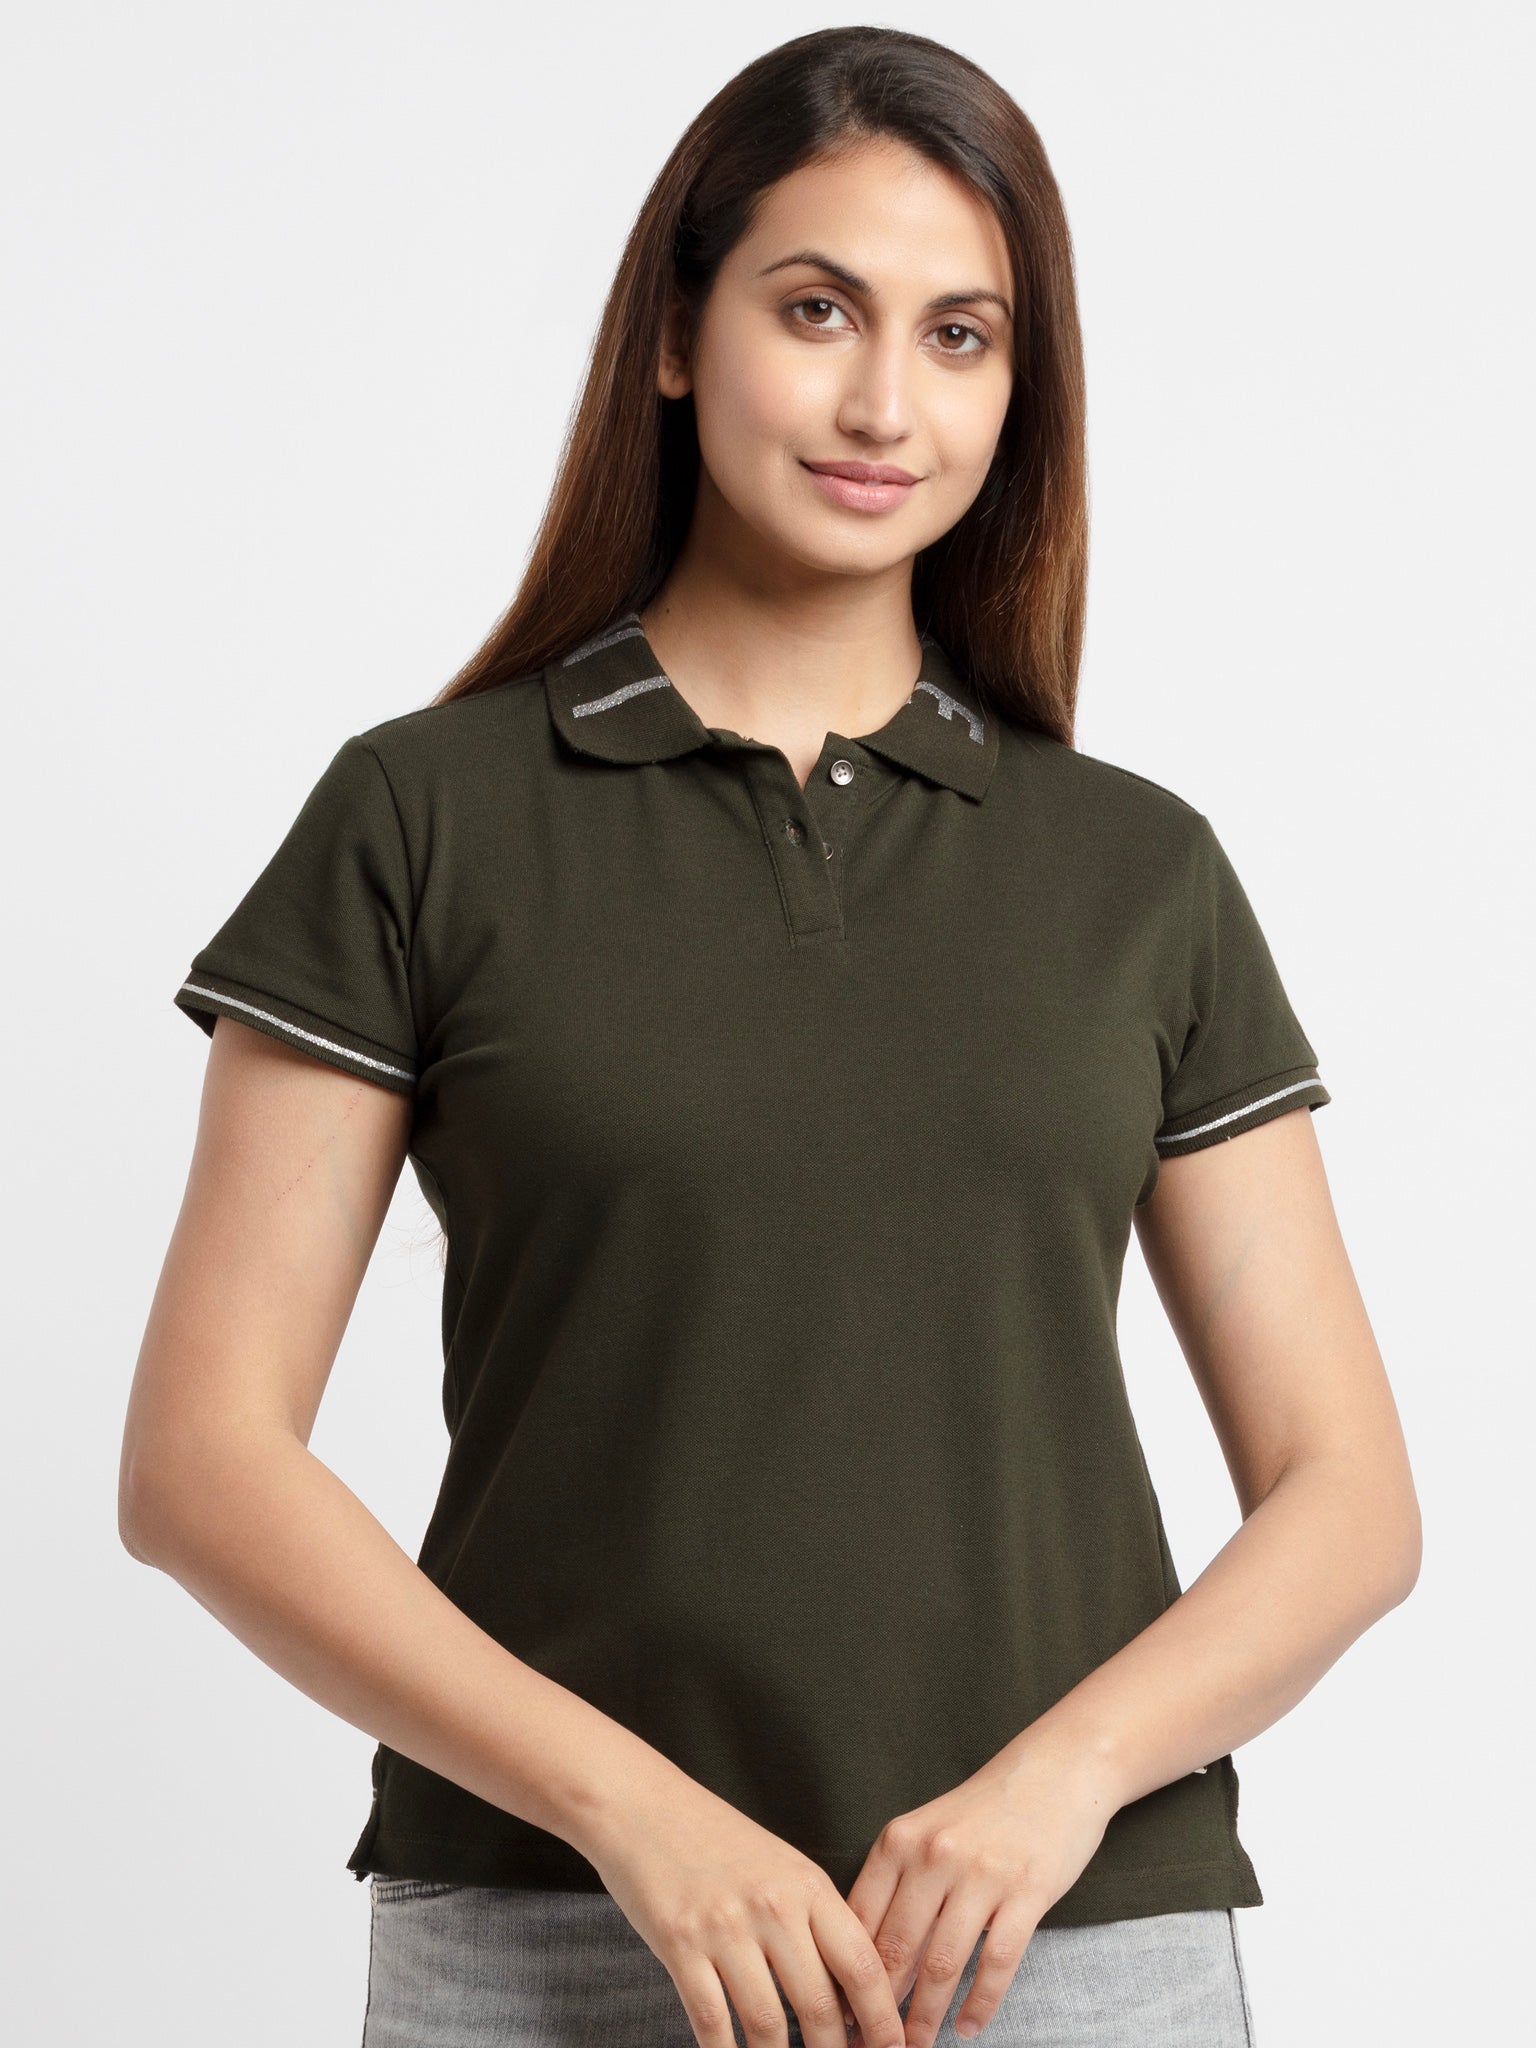 Buy Womens Printed Polo T-Shirt -Status Quo | S, M,  L,  XL,  XXL, 3XL